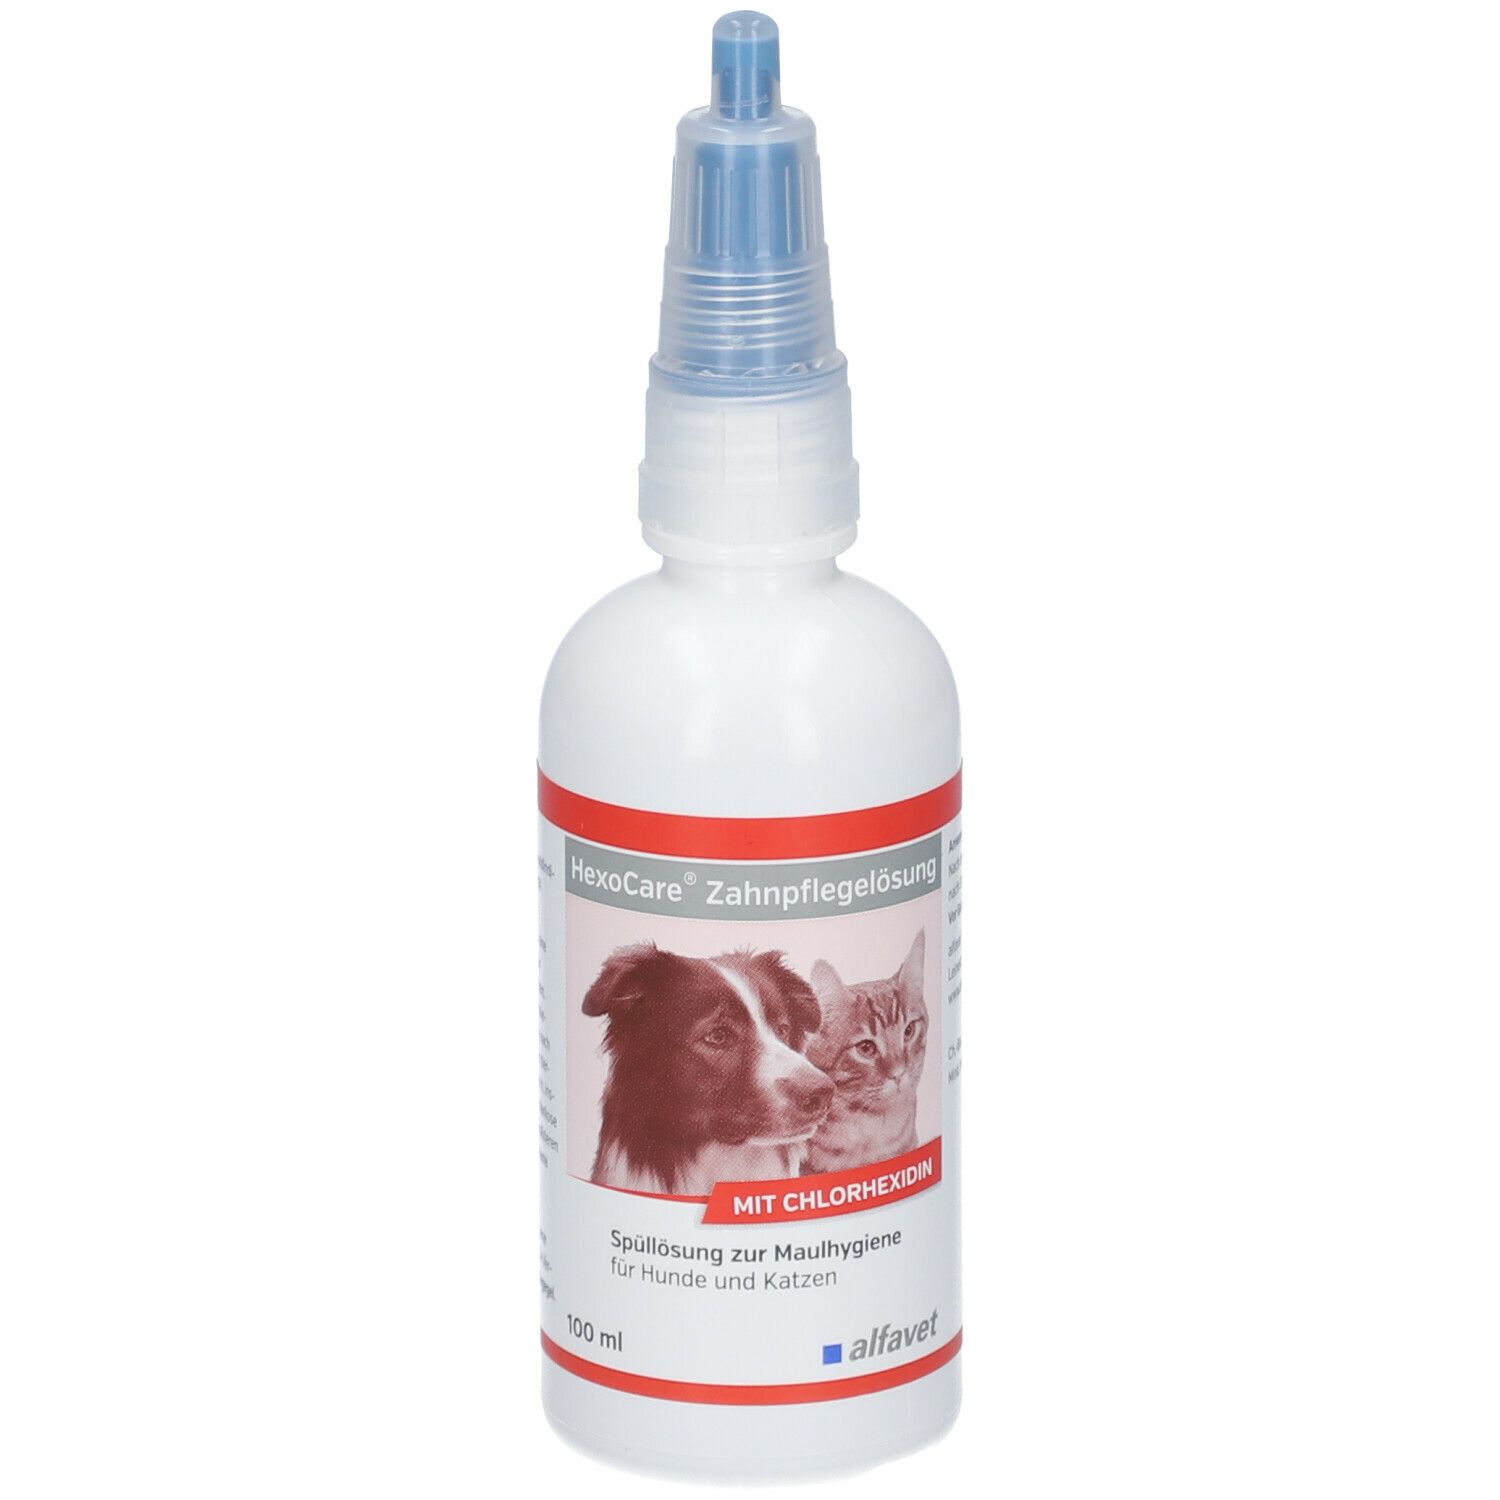 HexoCare® Zahnpflegelösung für Hunde und Katzen